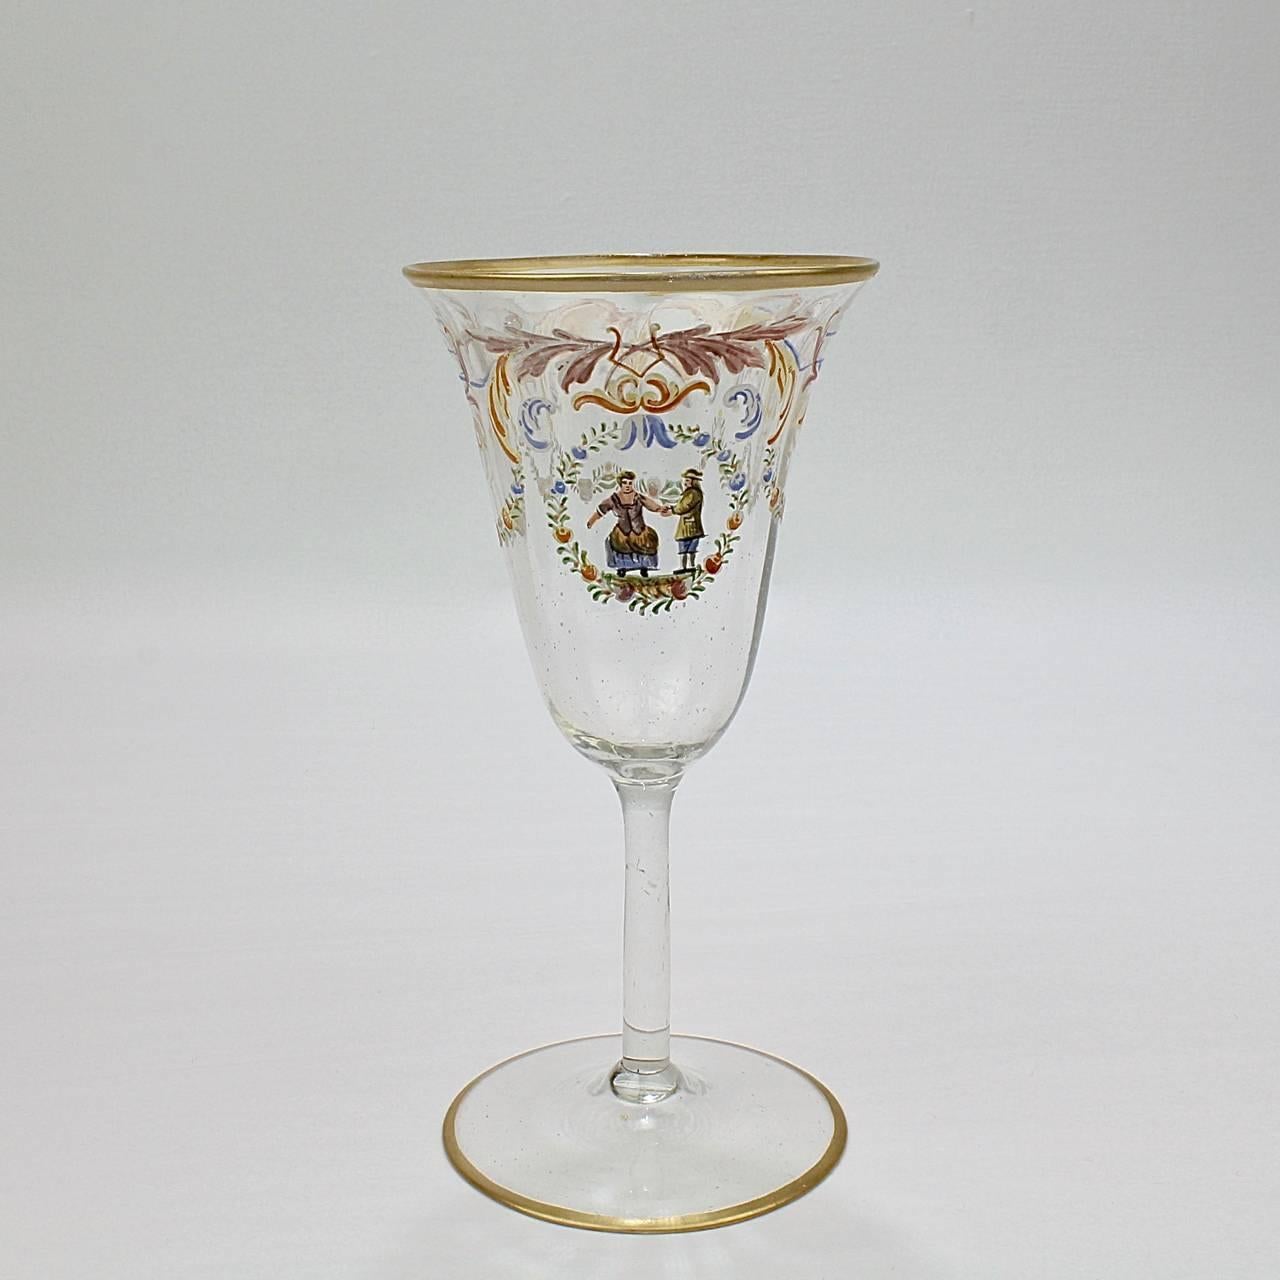 Renaissance Revival Set of 12 Enameled Venetian Glass White Wine Stems or Glasses, 1930s